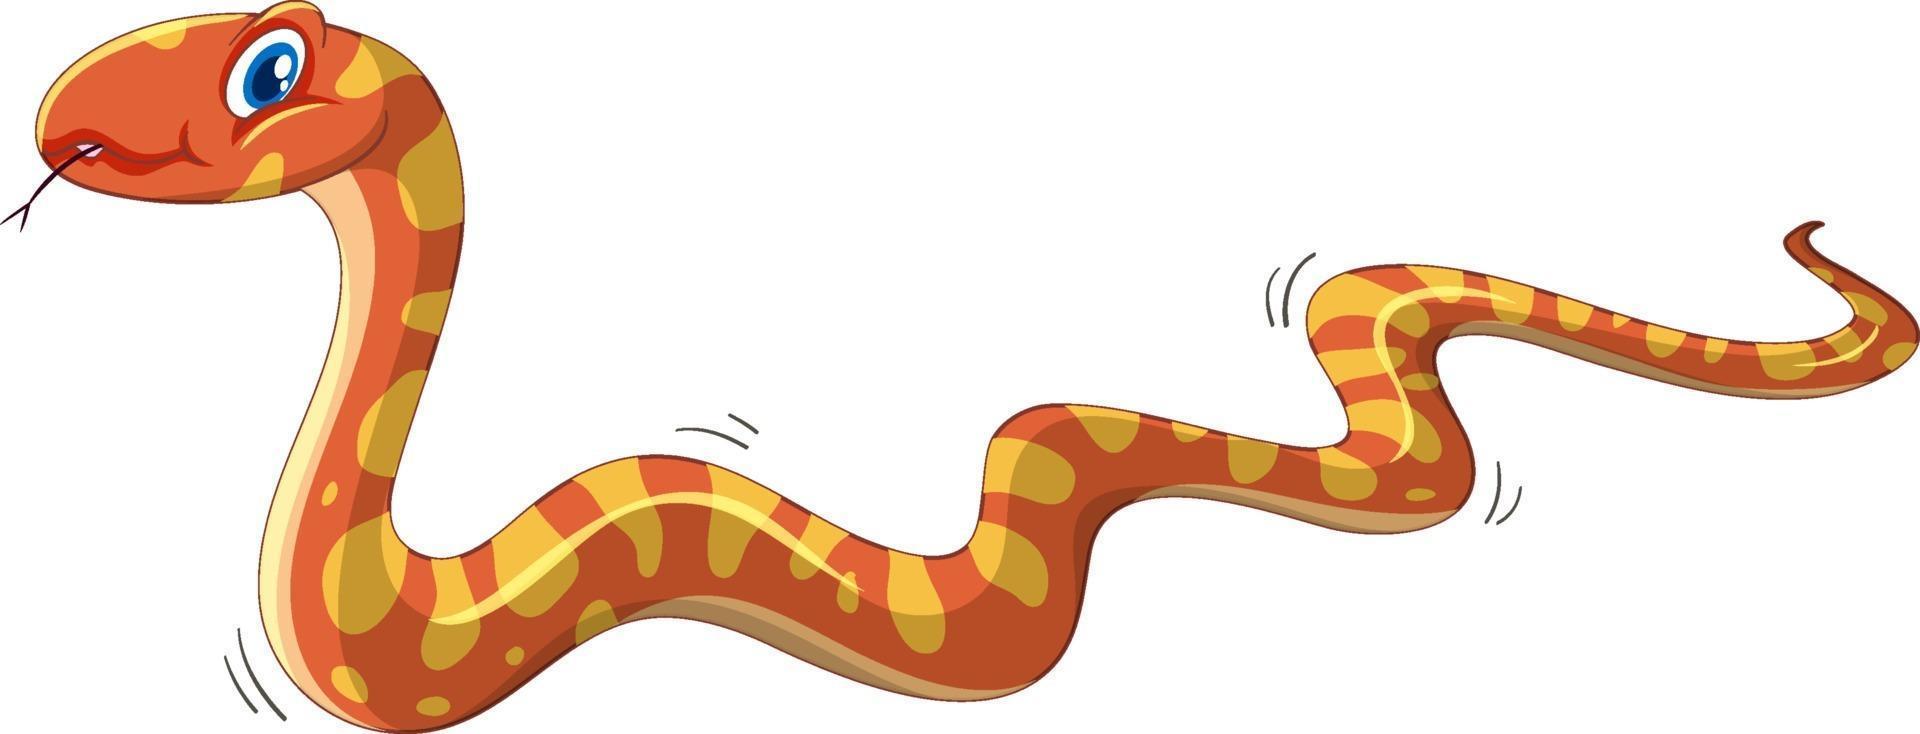 personnage de dessin animé de serpent orange isolé sur fond blanc vecteur